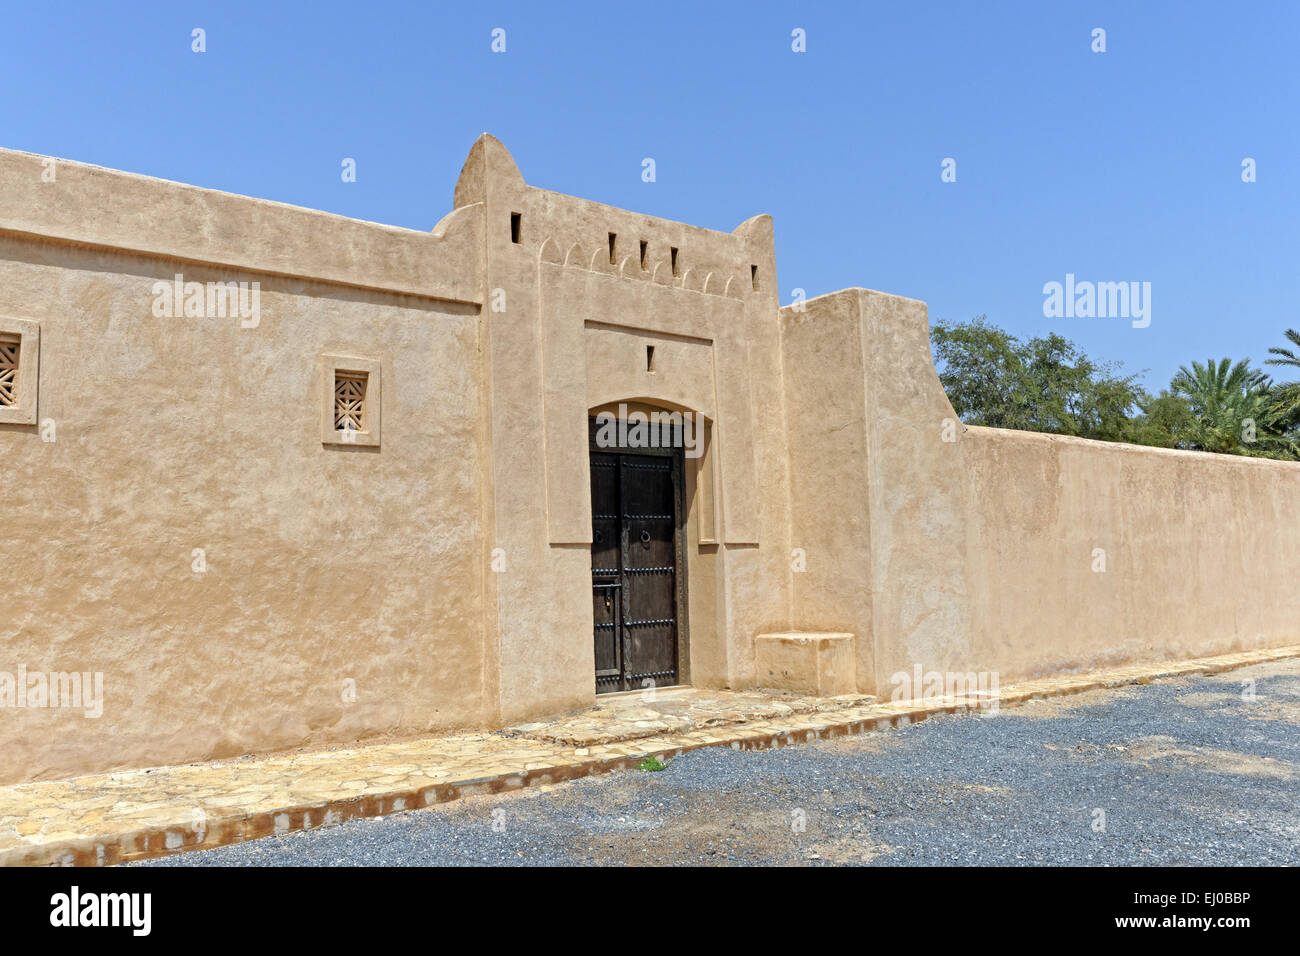 Mittlerer Osten, in der Nähe von East, Vereinigte Arabische Emirate, UAE, Fujairah, Fujairah Hertige Dorf, Palast, Hochbau, historische Stockfoto